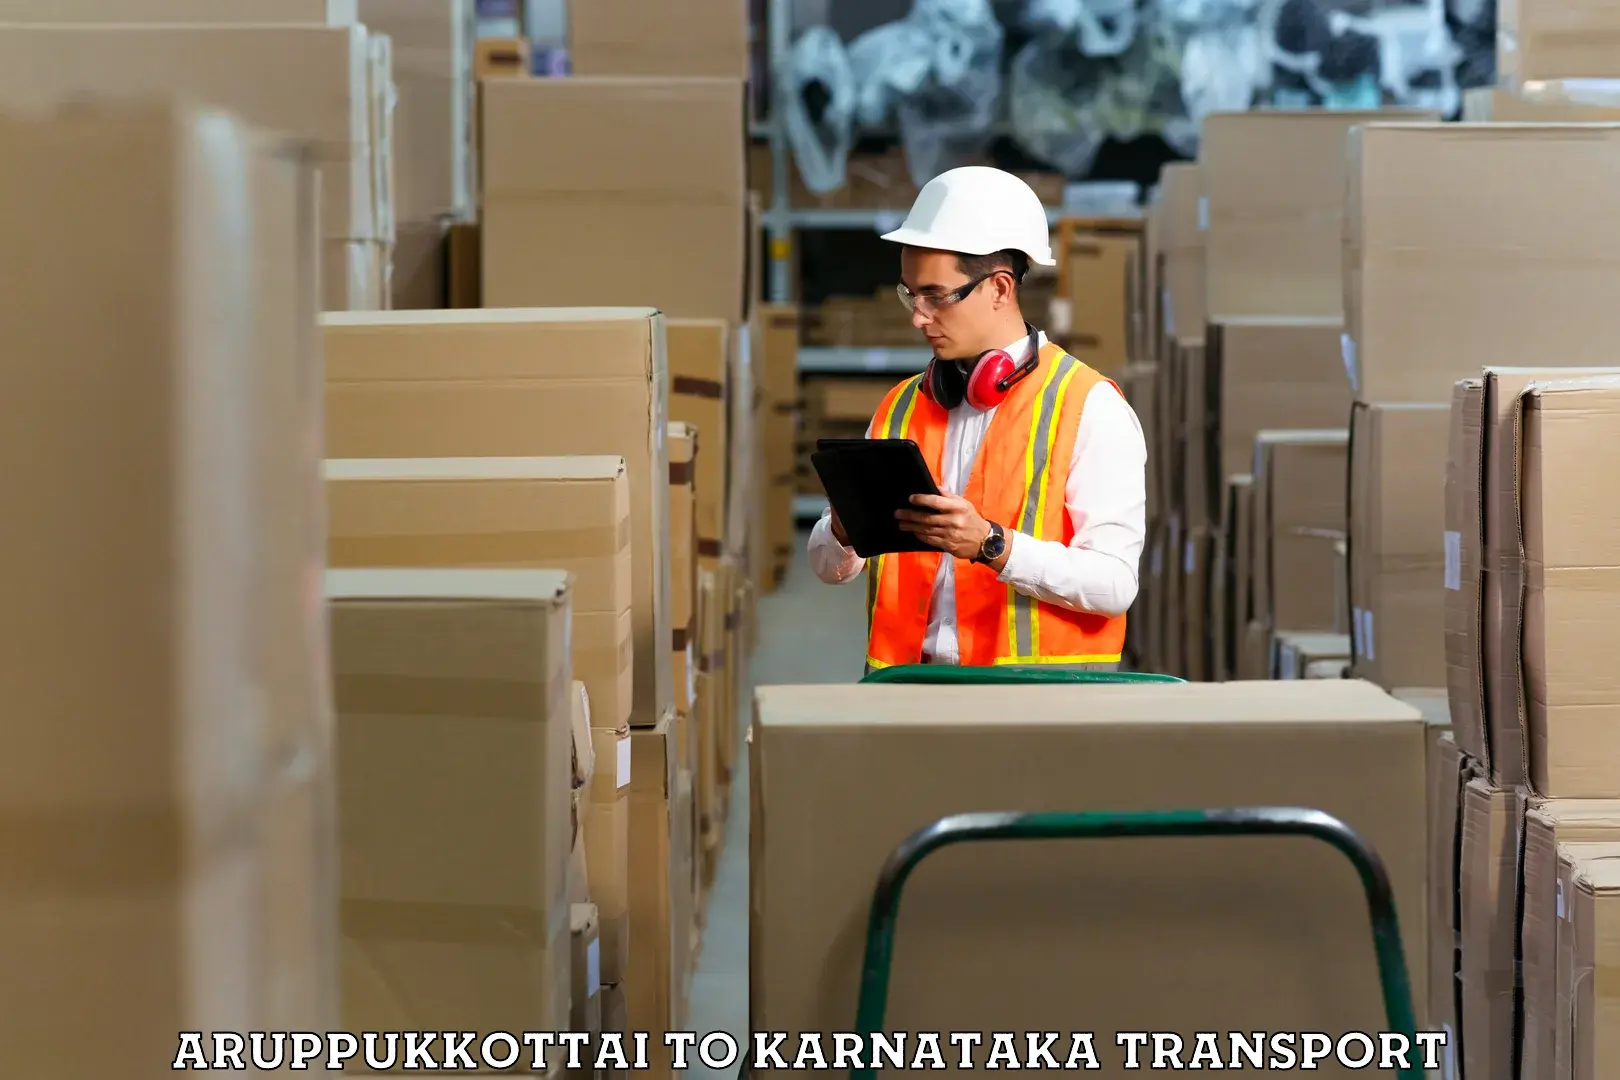 Nearest transport service Aruppukkottai to Kanjarakatte